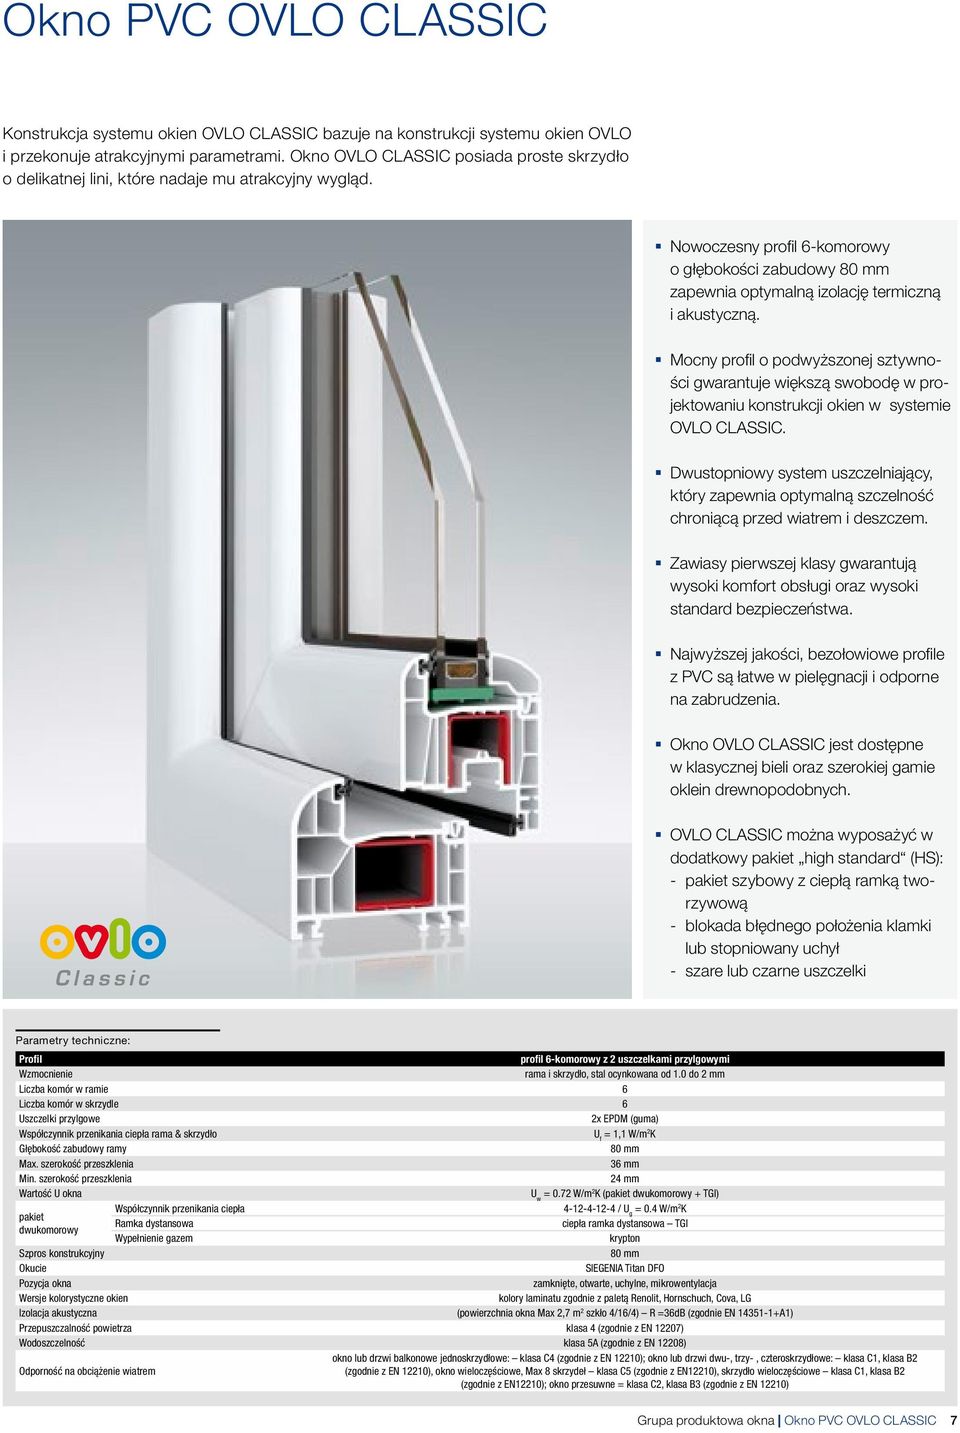 Nowoczesny profil 6-komorowy o łębokości zabudowy 80 mm zapewnia optymalną izolację termiczną i akustyczną.